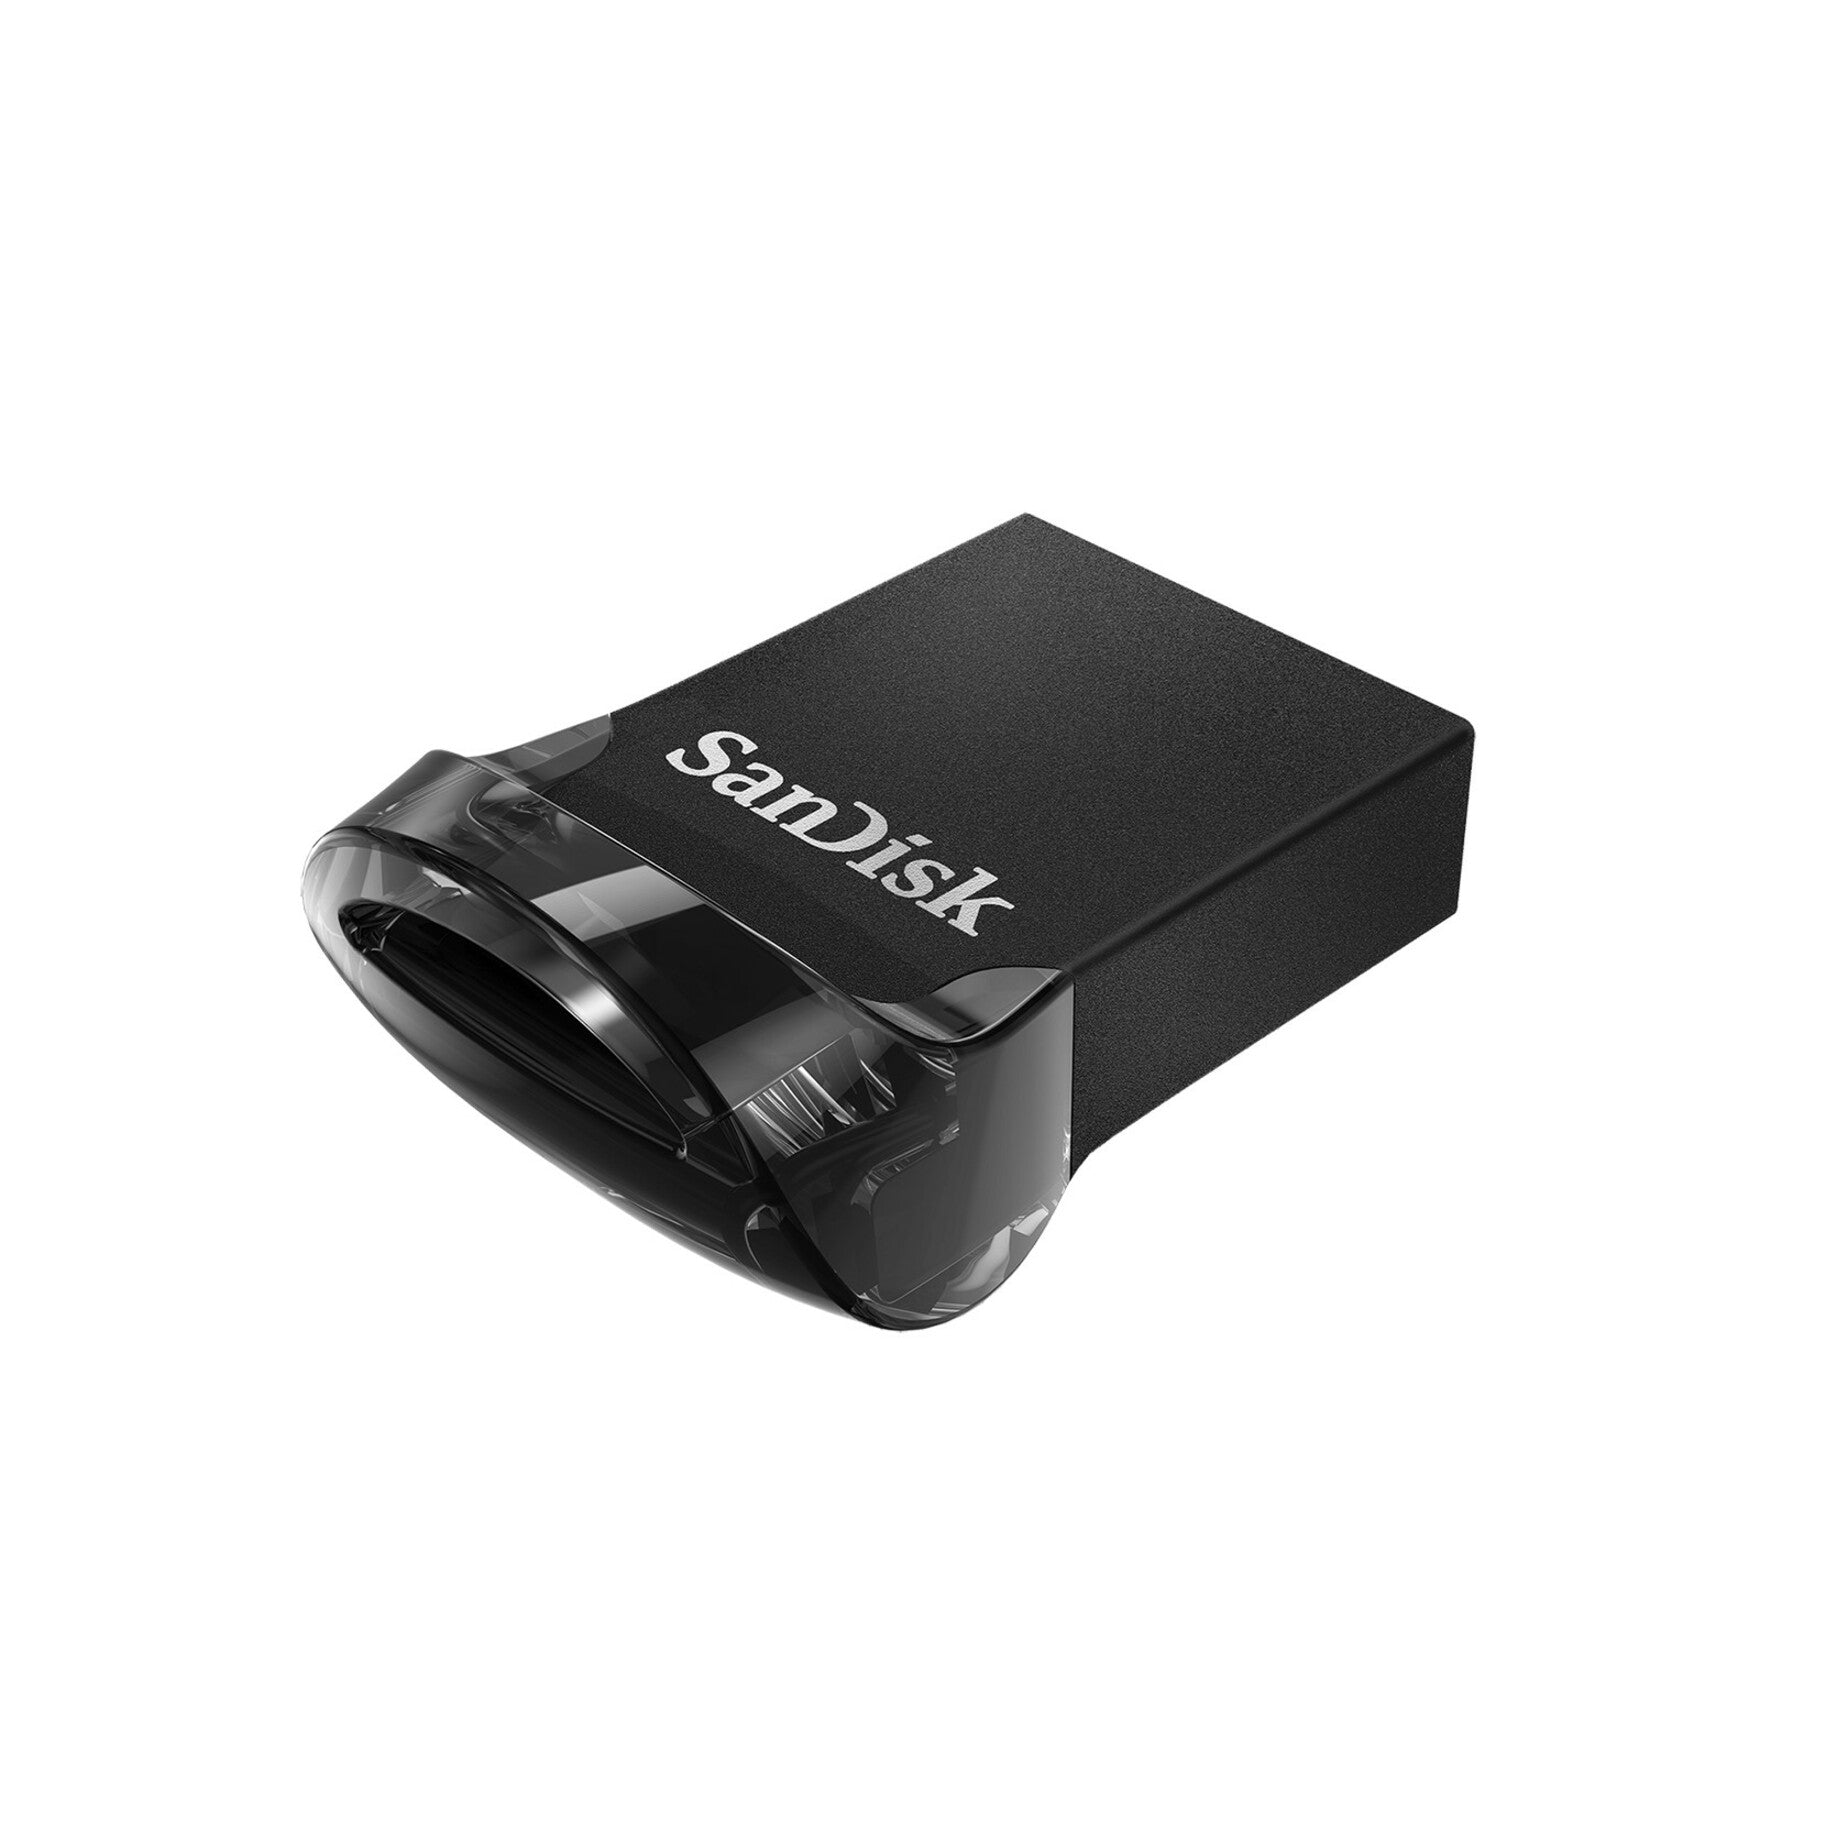 Marca: SanDisk Capacidad: 32GB Interfaz: USB 3.1 Transferencia de Datos de Alta Velocidad Diseño Compacto